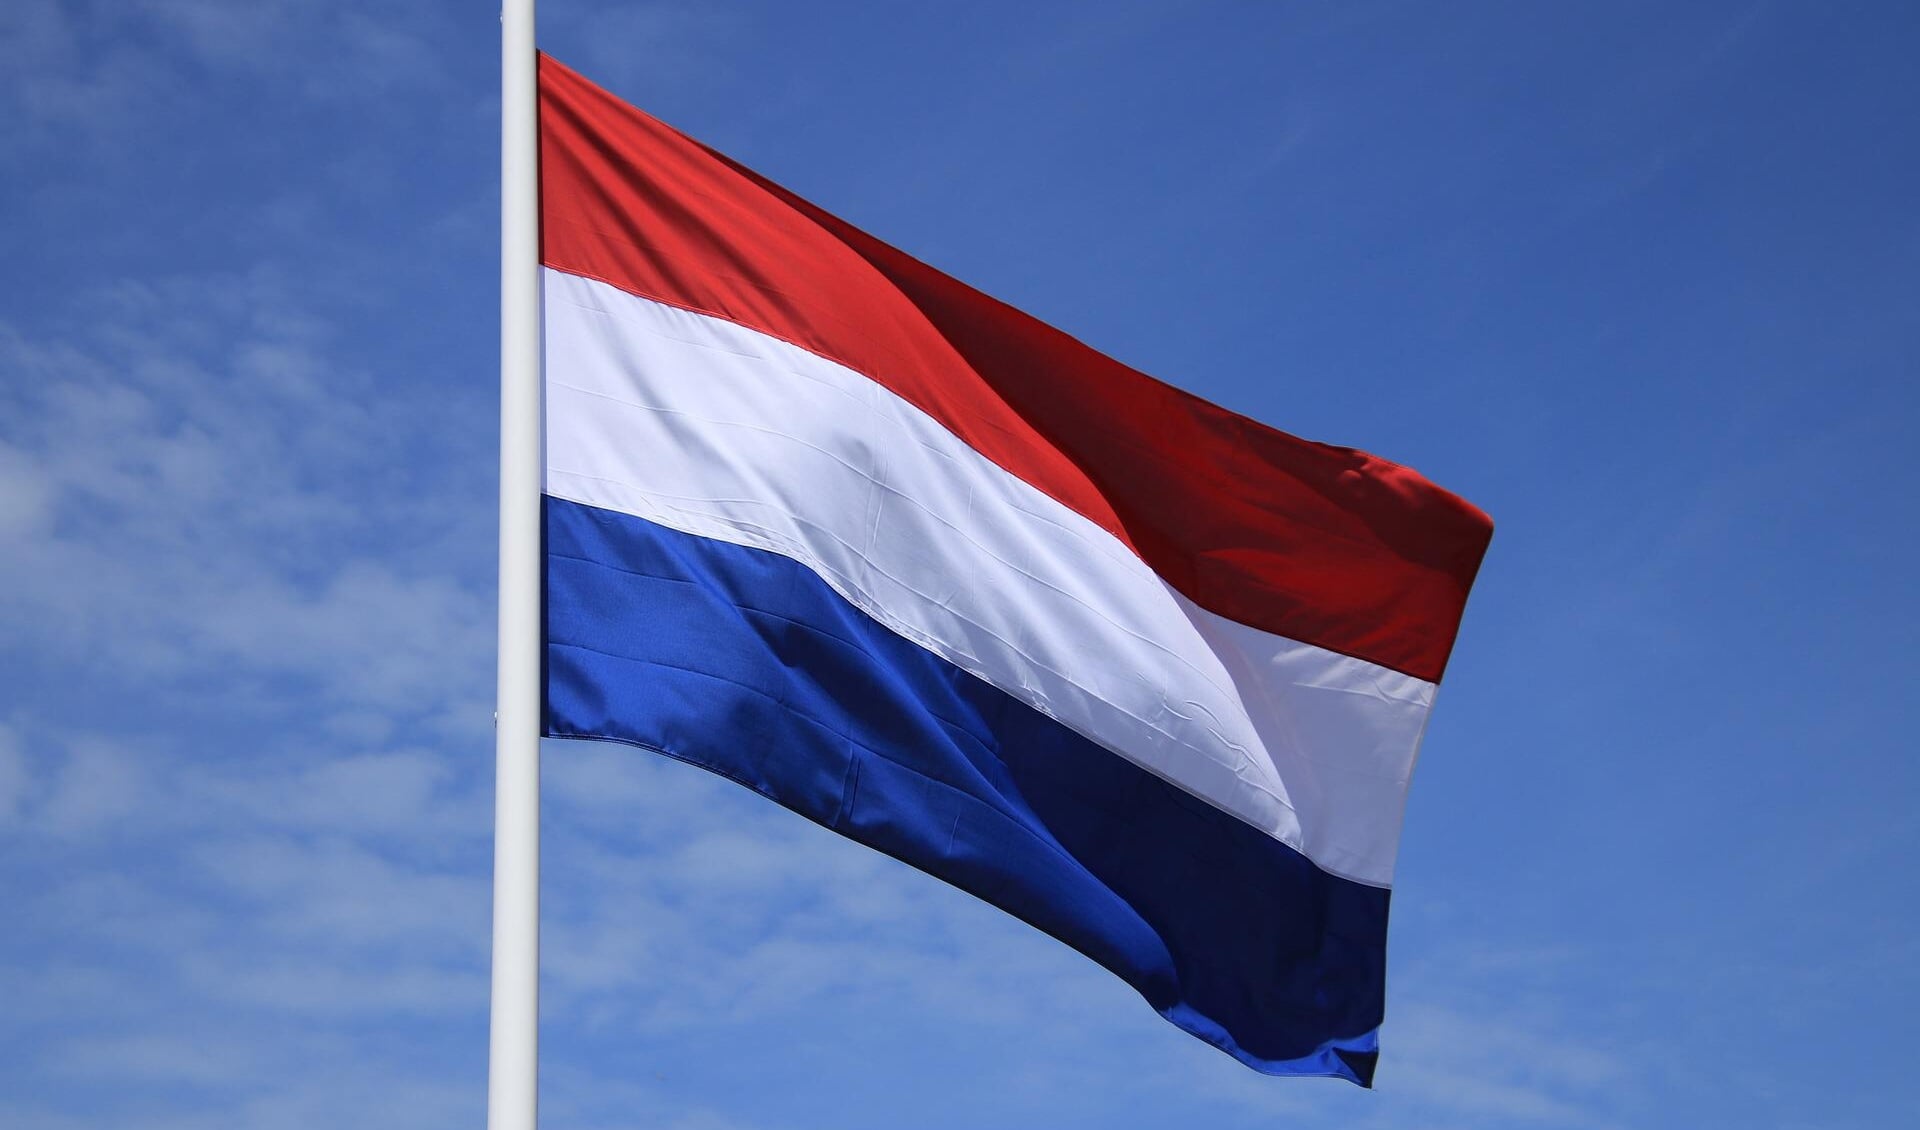 De Nederlandse vlag wappert maandag 15 augustus op het gemeentehuis in Schagen.